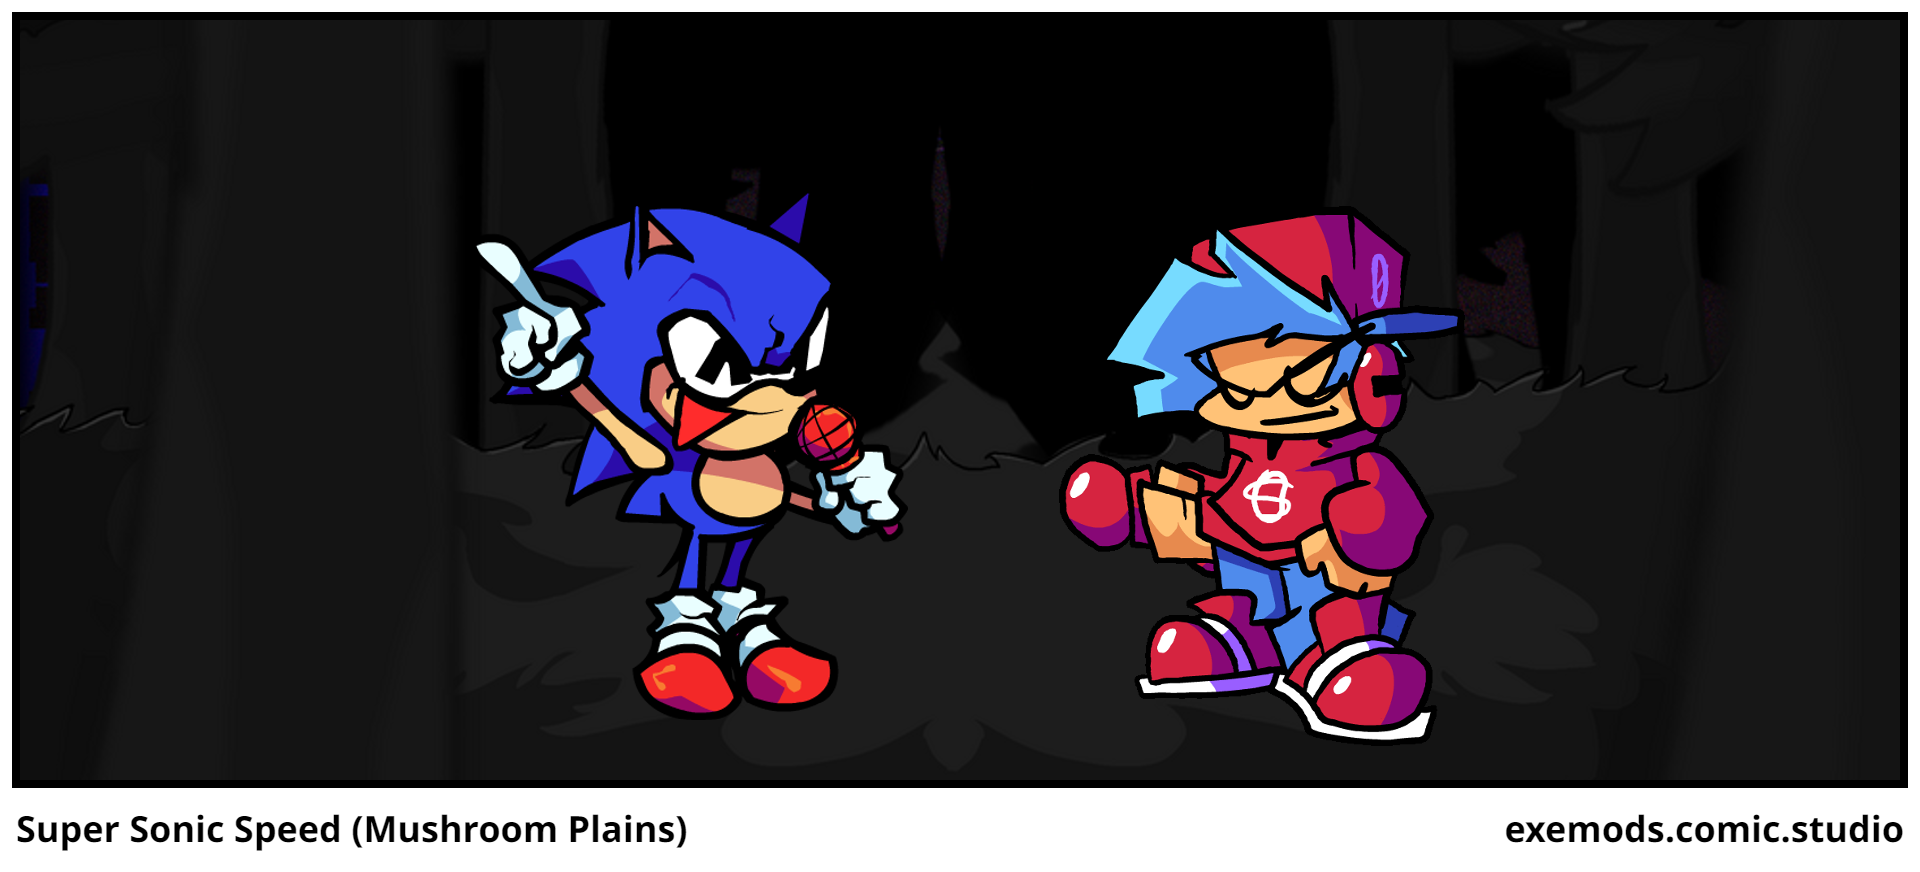 Super Sonic Speed (Mushroom Plains)